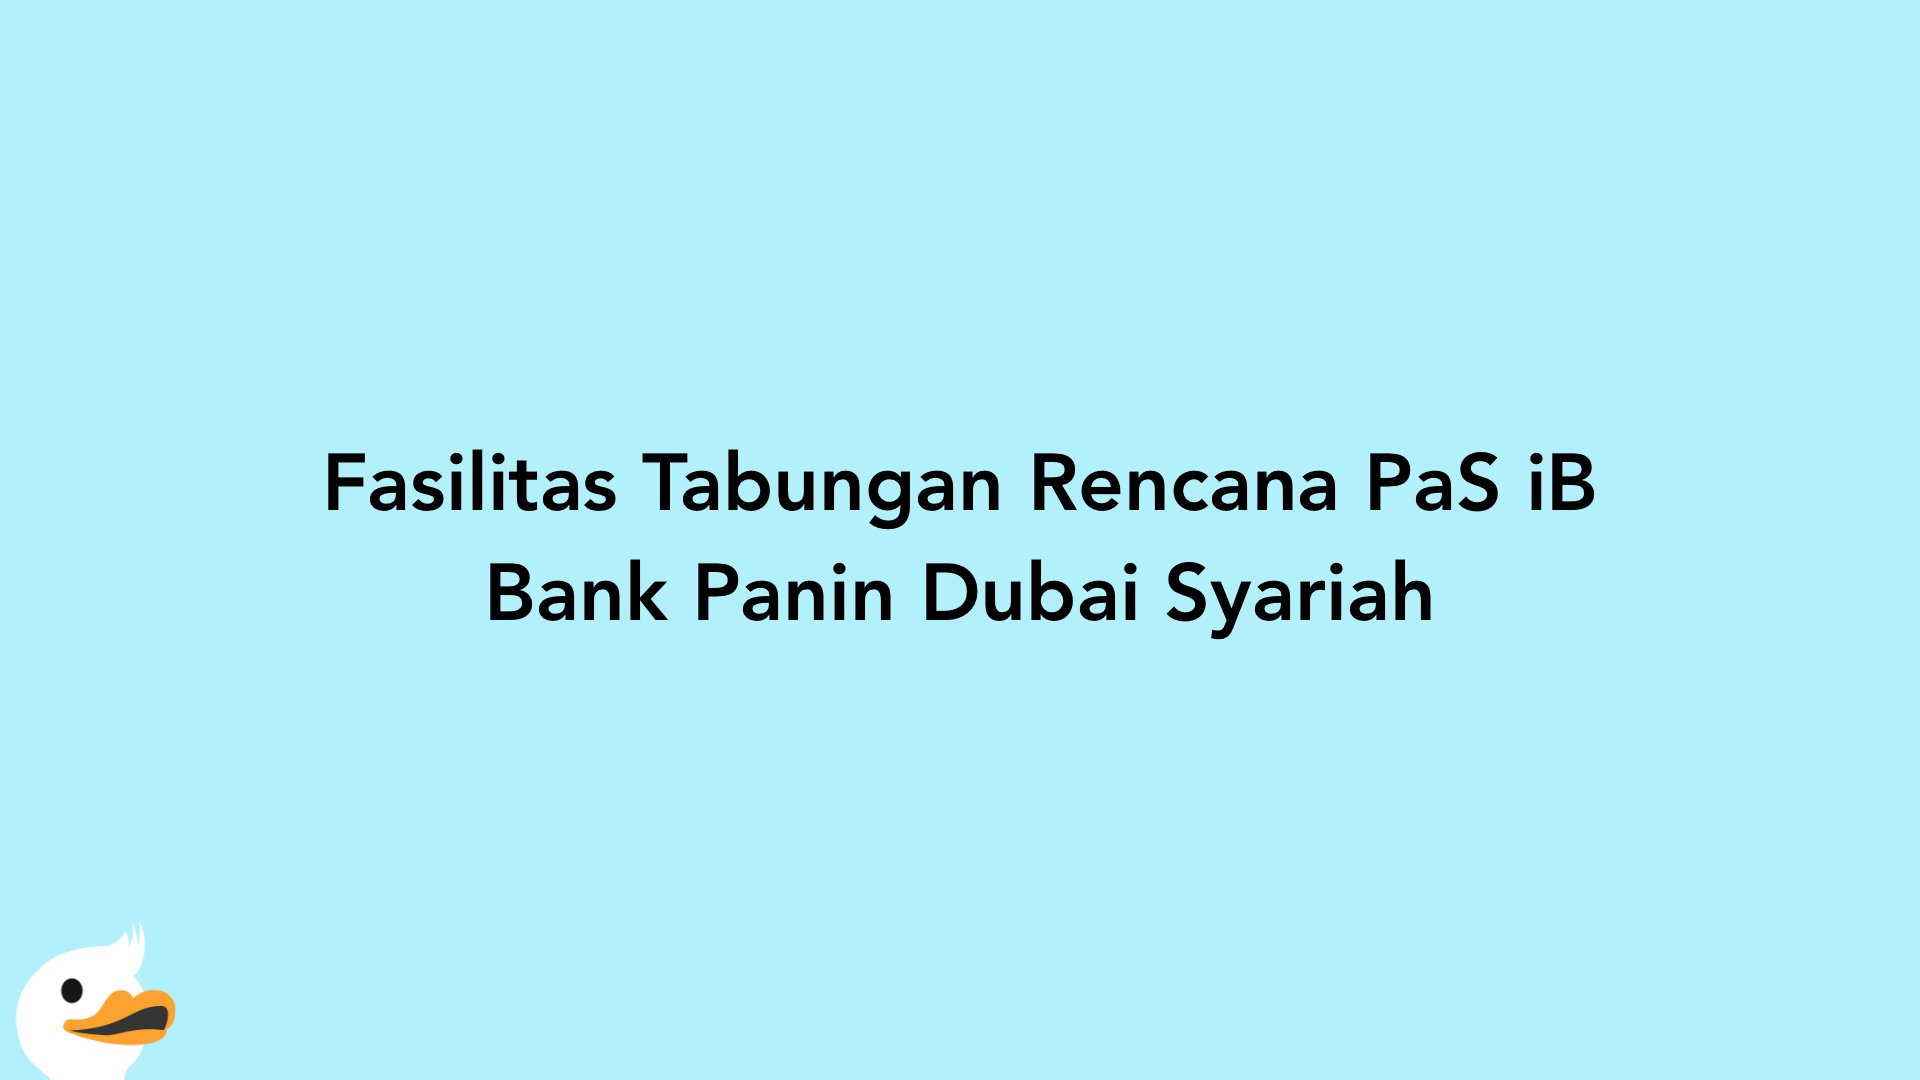 Fasilitas Tabungan Rencana PaS iB Bank Panin Dubai Syariah